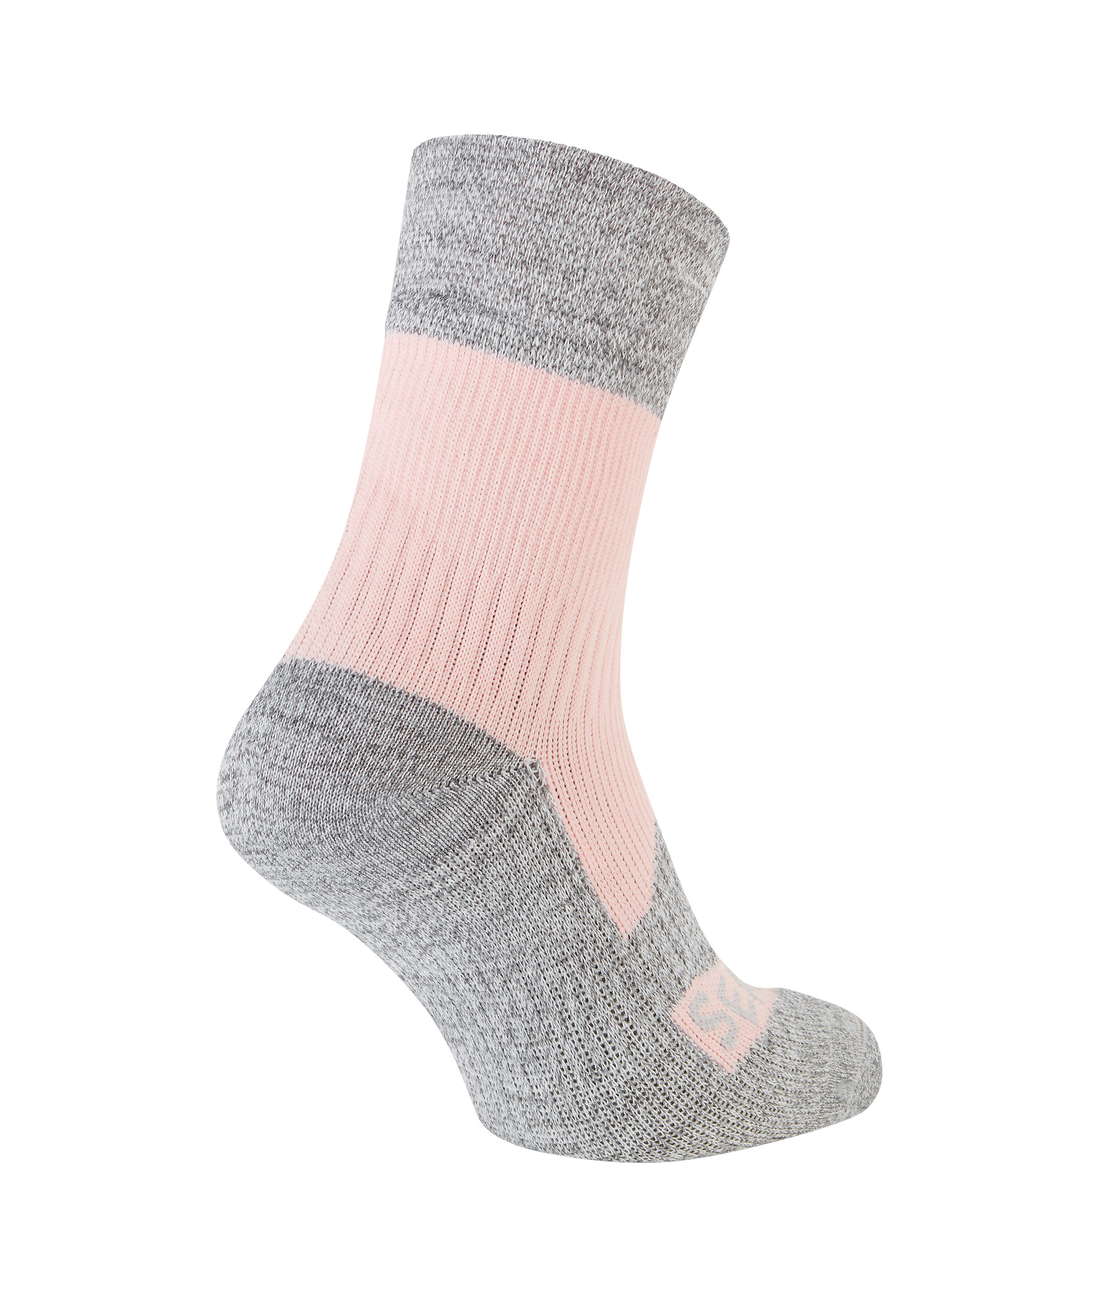 Bircham - Waterproof All Weather Ankle Length Sock Damenmodell